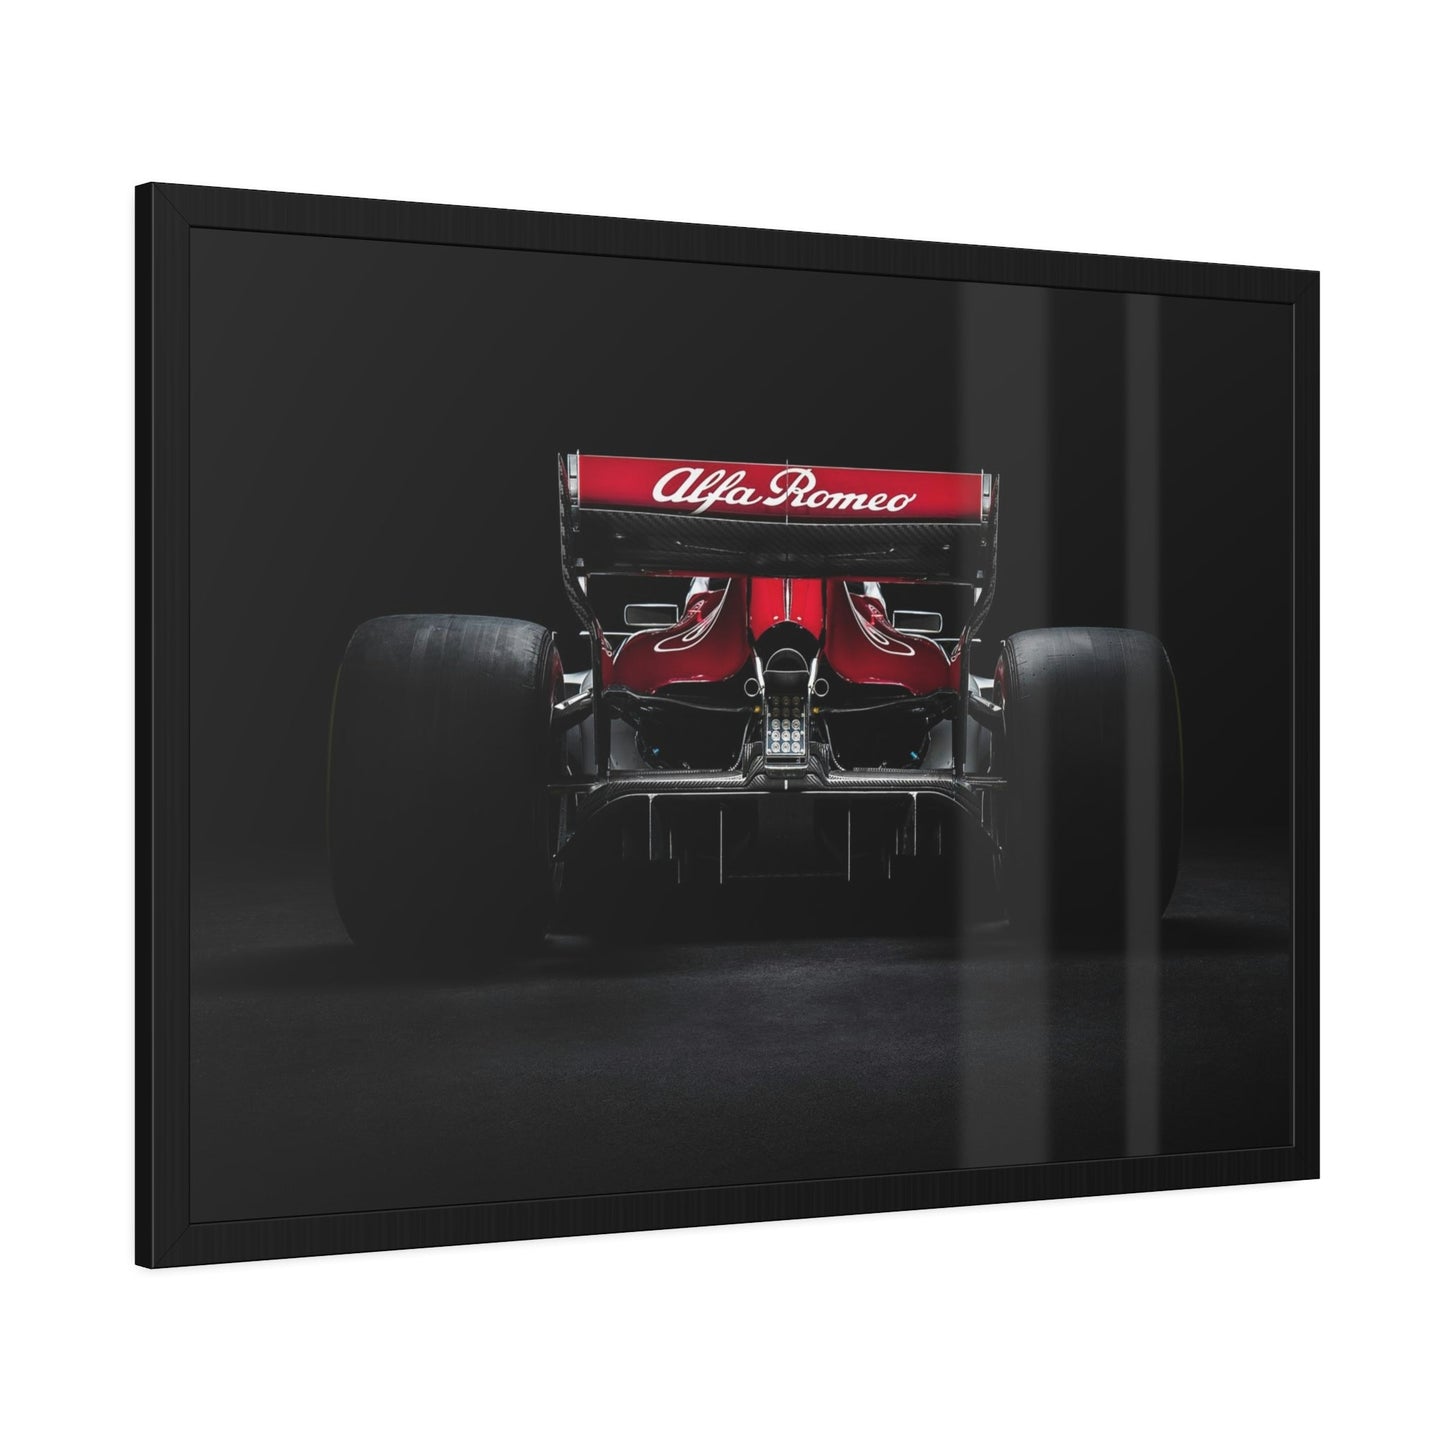 Winning Formula: F1 Wall Art on Framed Canvas & Poster